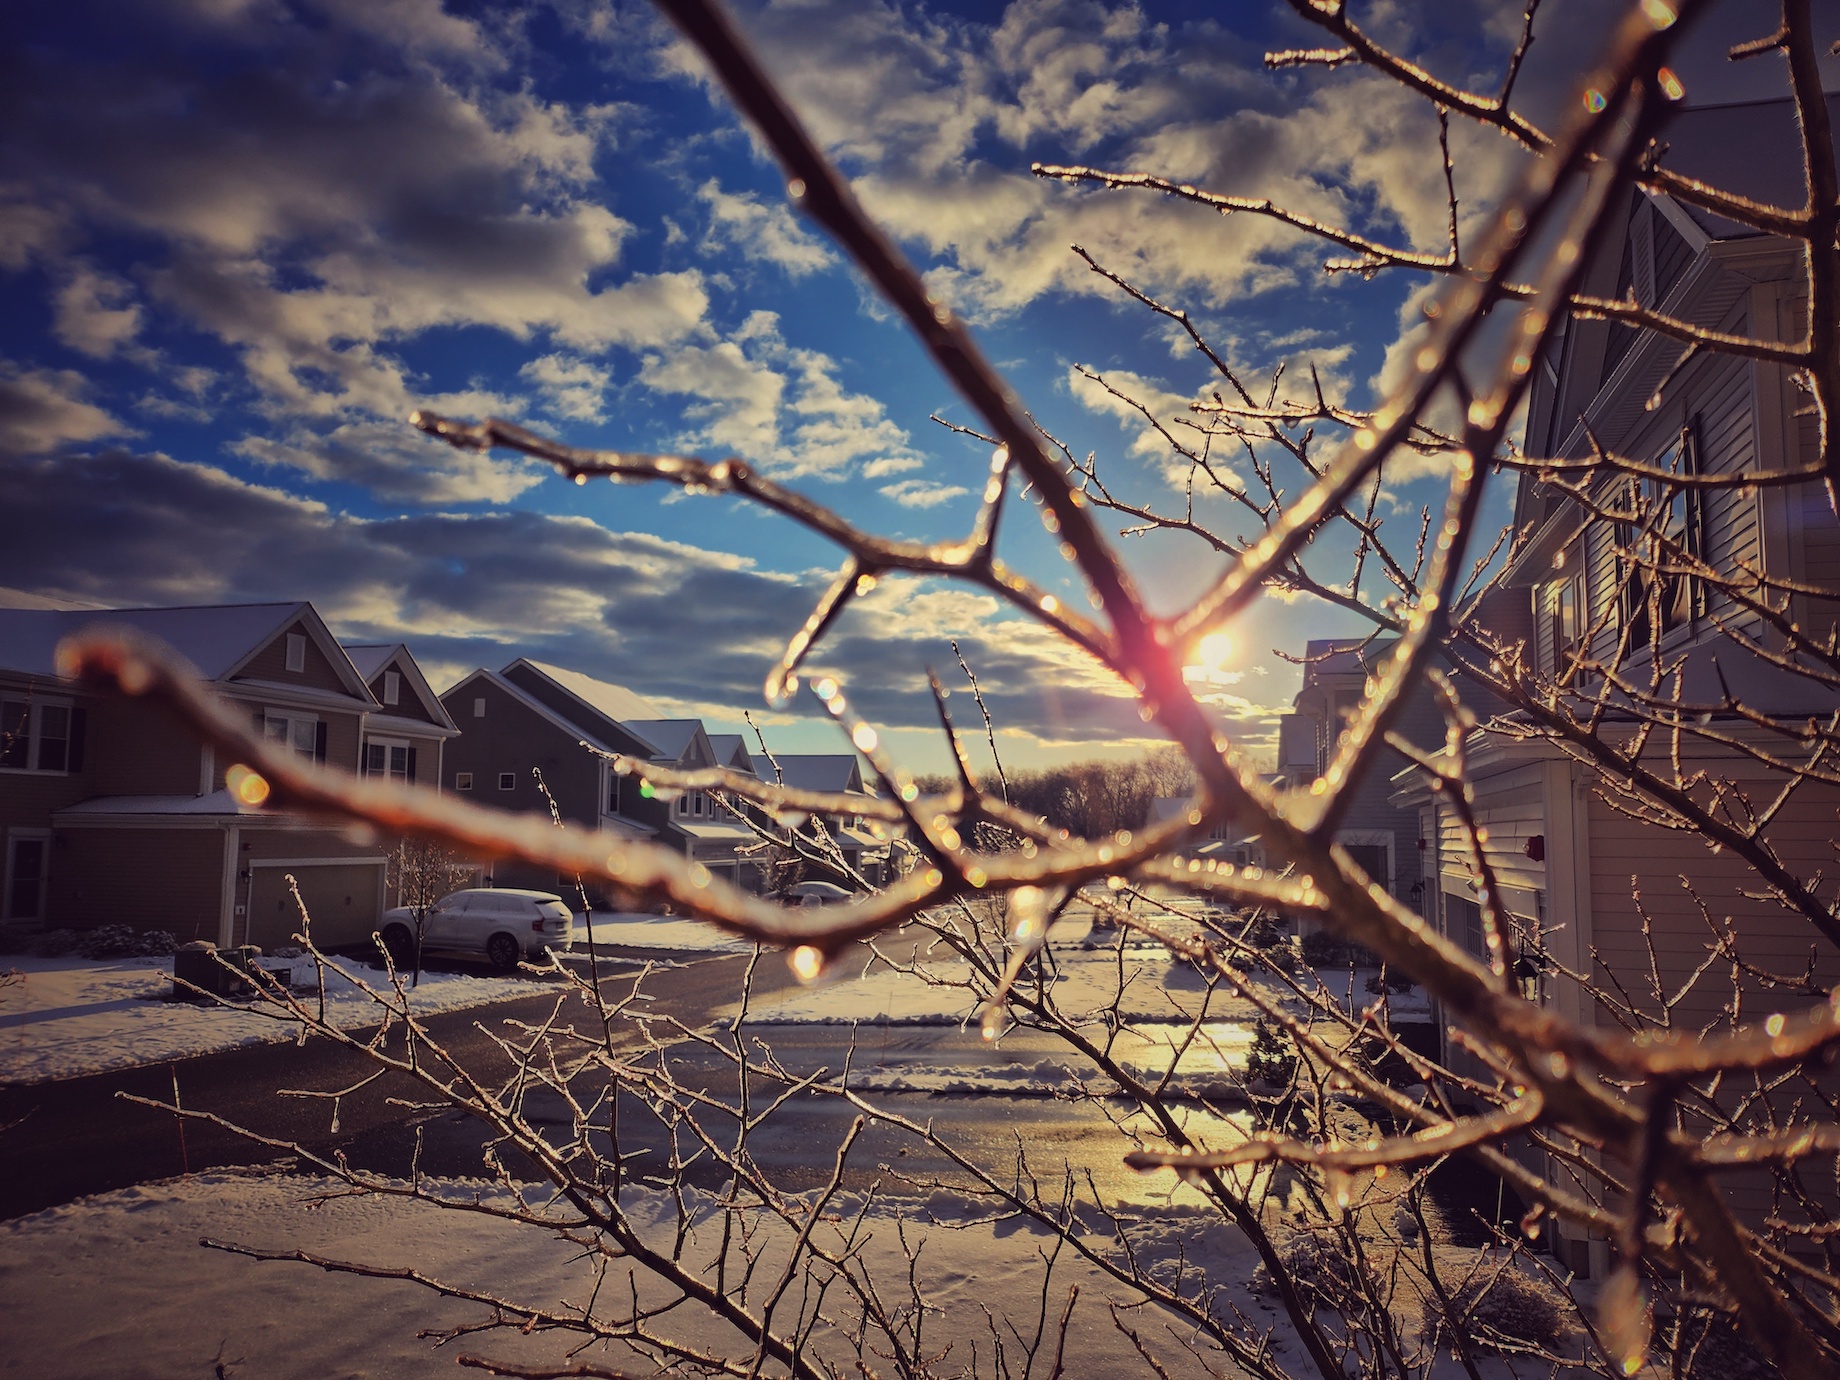 Photos: Winter in Hopkinton